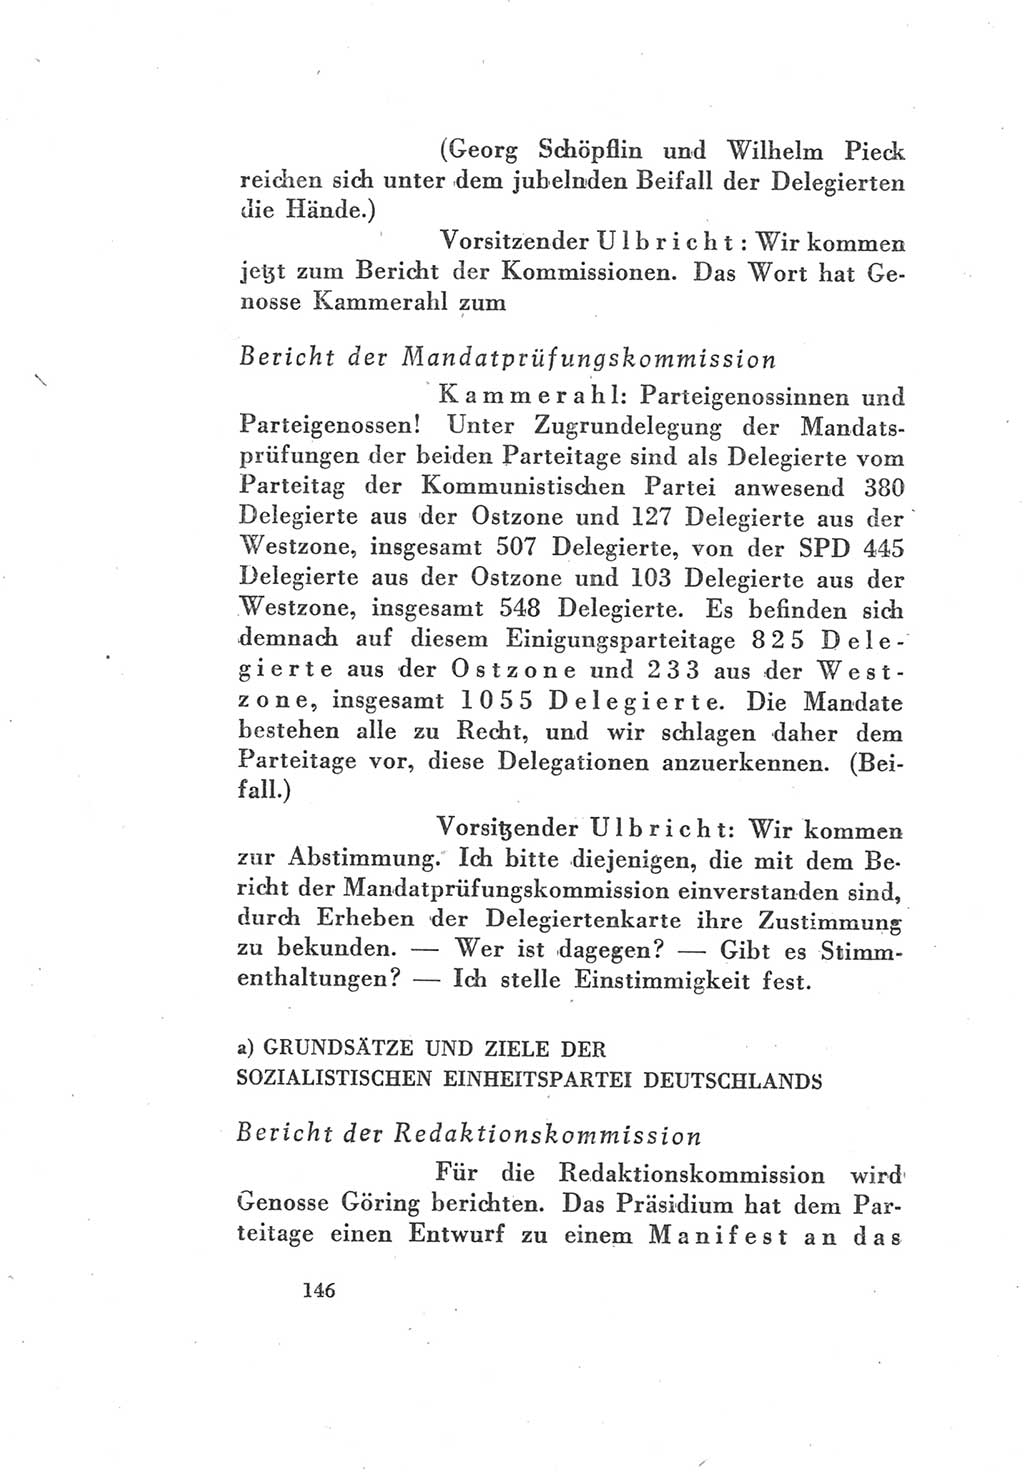 Protokoll des Vereinigungsparteitages der Sozialdemokratischen Partei Deutschlands (SPD) und der Kommunistischen Partei Deutschlands (KPD) [Sowjetische Besatzungszone (SBZ) Deutschlands] 1946, Seite 146 (Prot. VPT SPD KPD SBZ Dtl. 1946, S. 146)